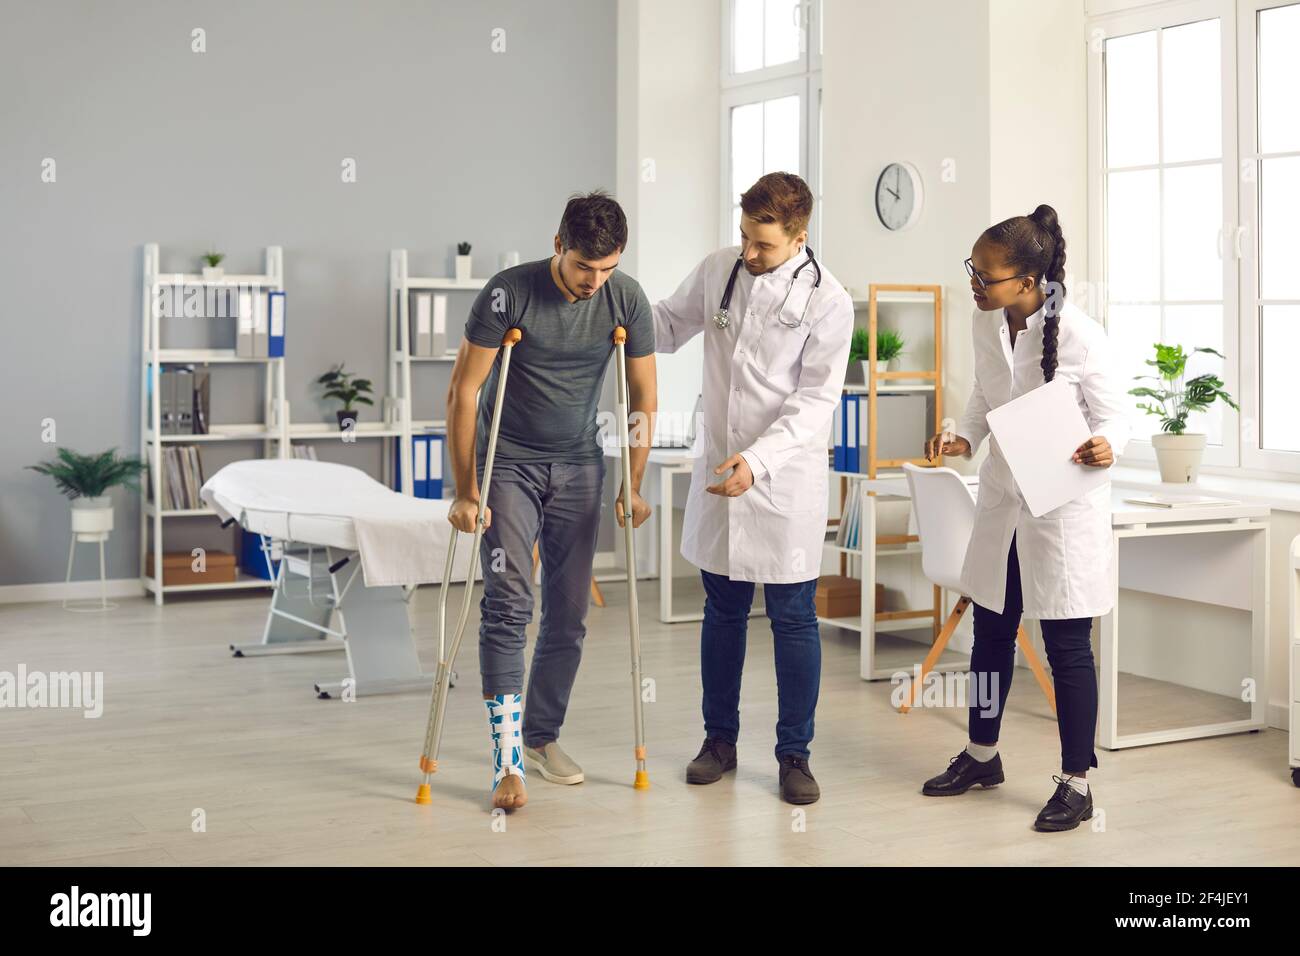 Ein Team von Ärzten verschiedener Nationalitäten im Krankenhaus hilft ihrem Patienten mit gebrochenem Knöchel. Stockfoto